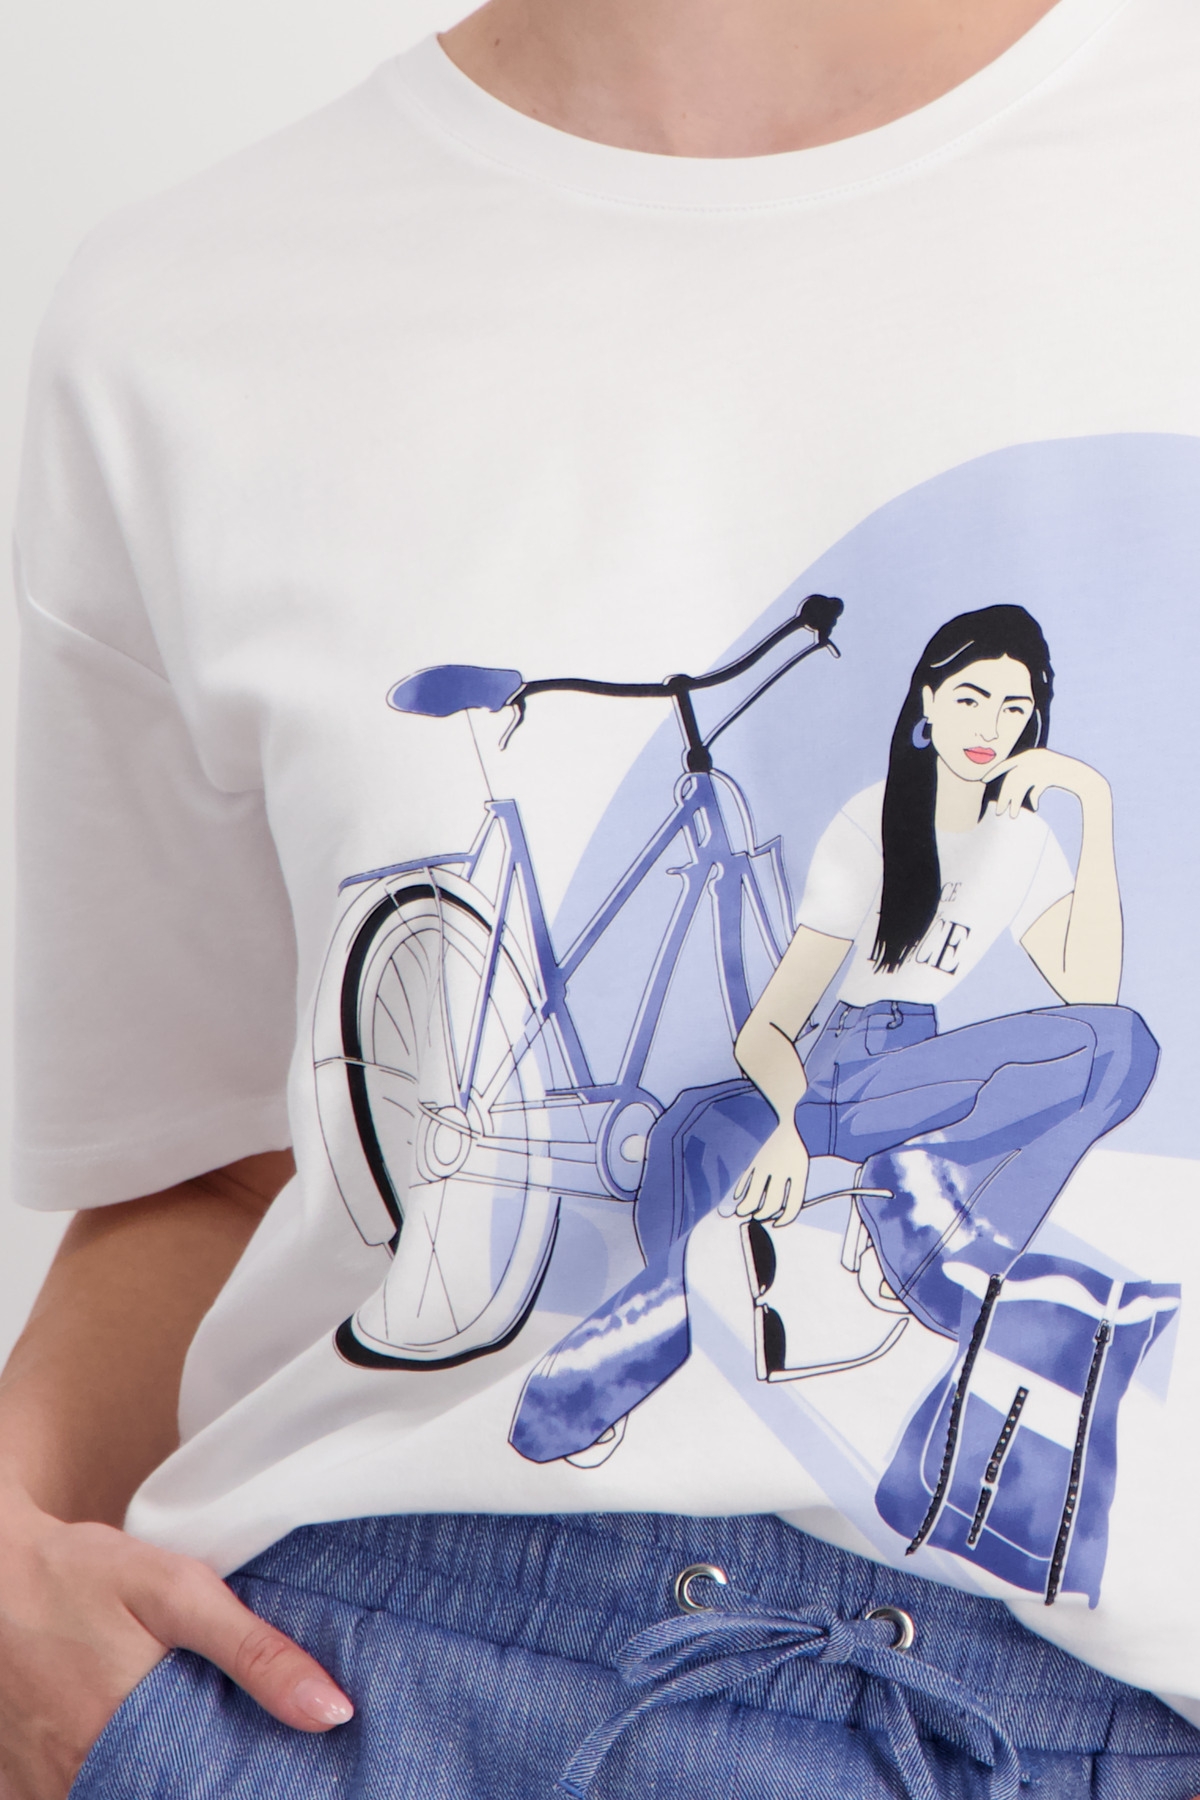 MONARI T-Shirt mit Frauen Zeichnung 10751351